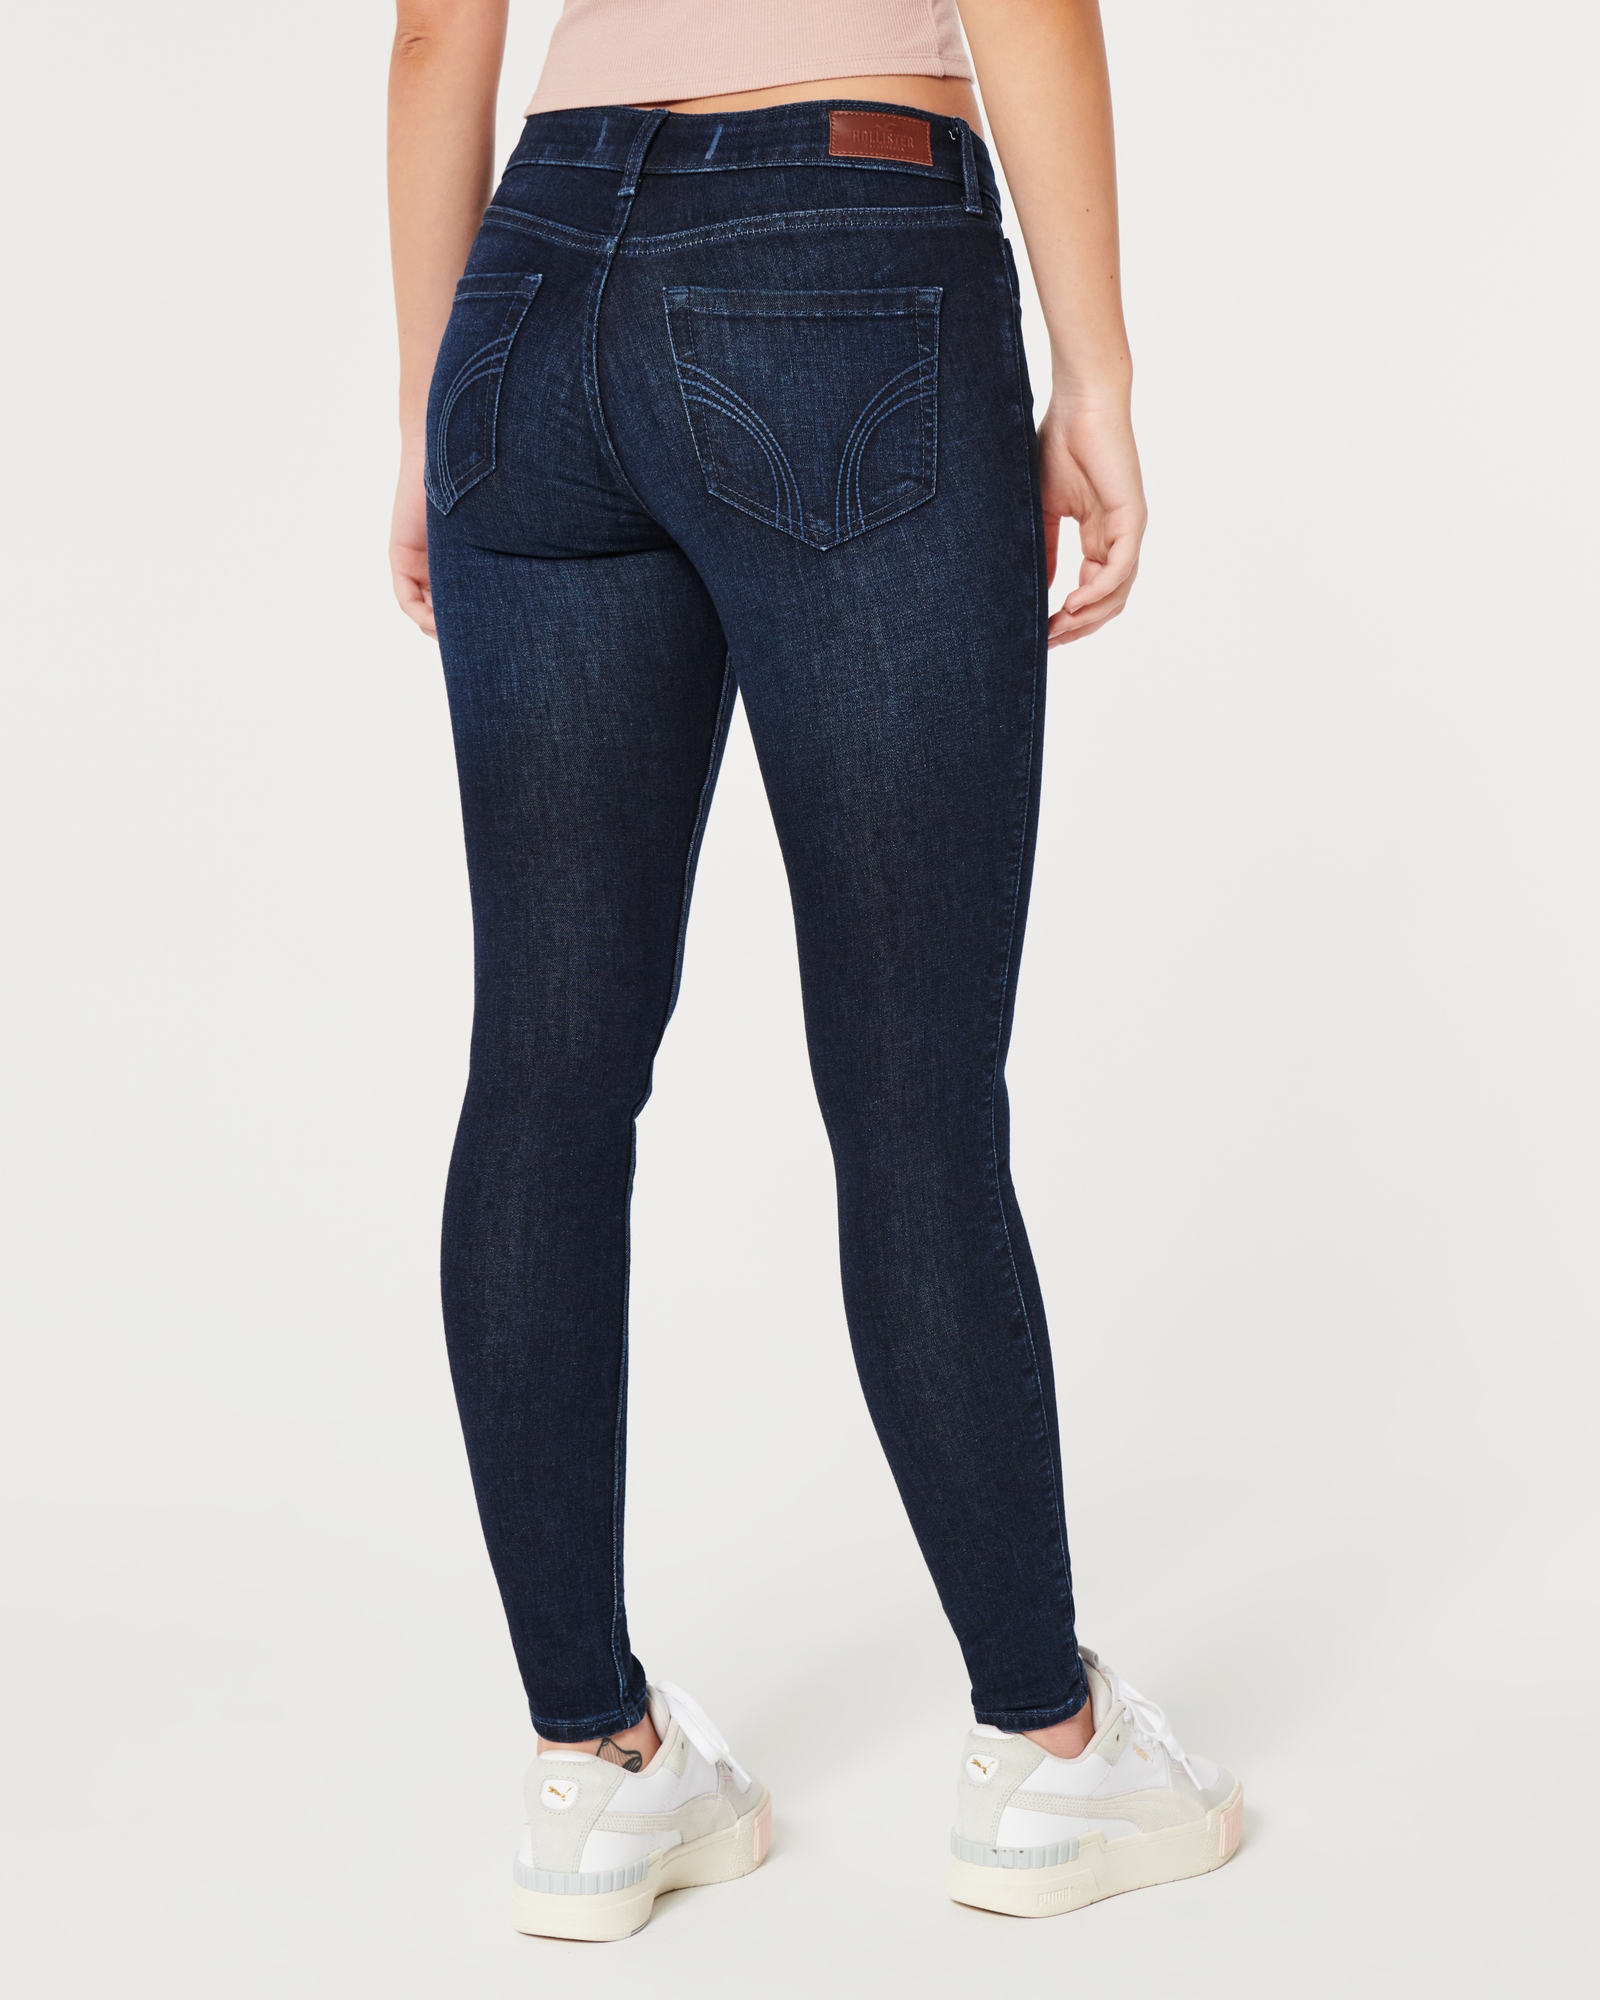 Women's Curvy Low-Rise Dark Wash Super Skinny Jeans, Women's Bottoms